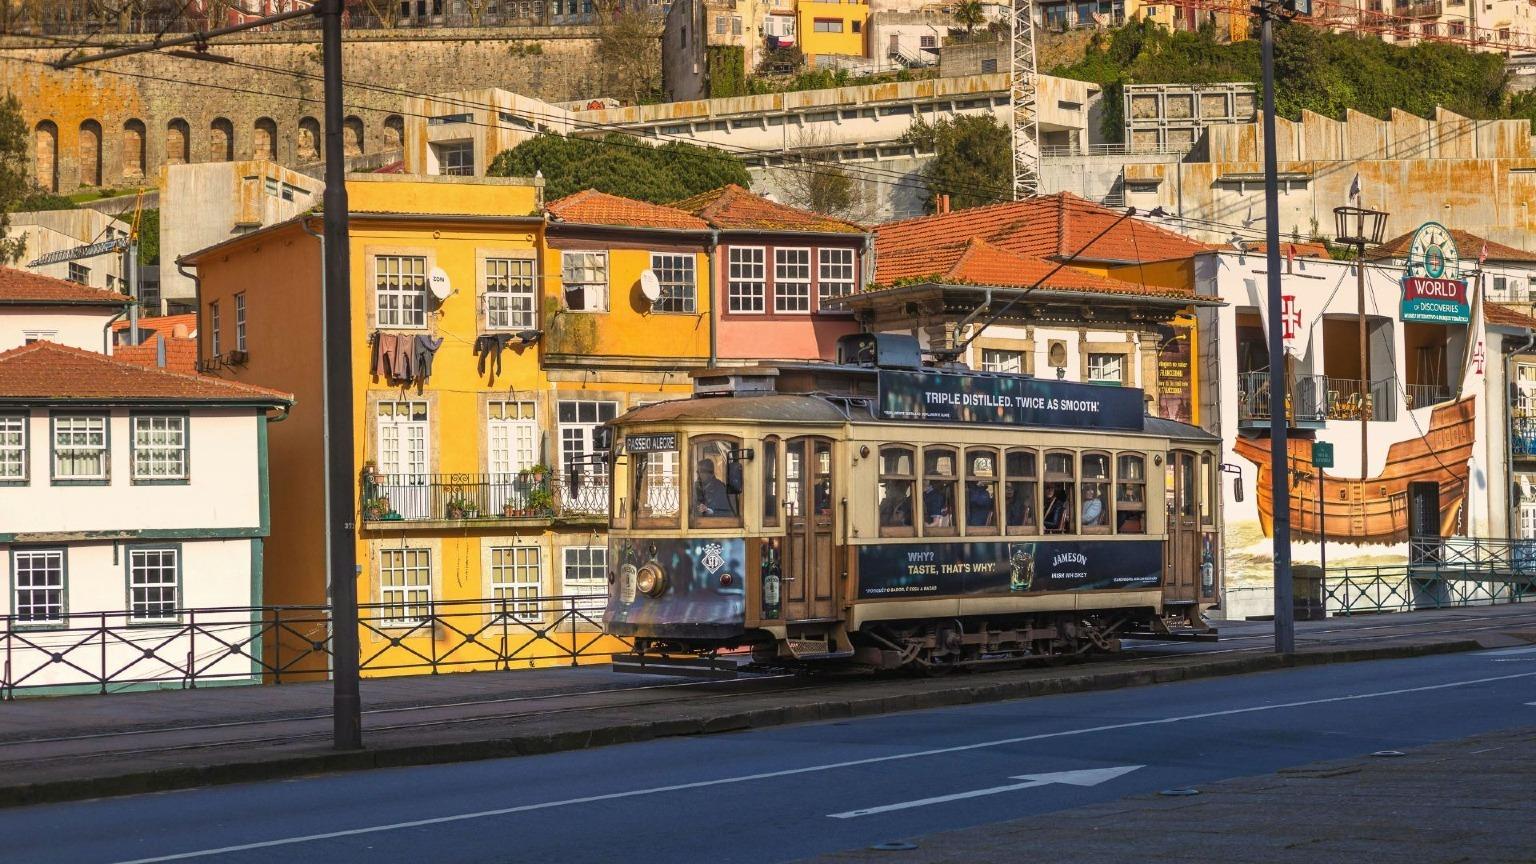 El emblemático tranvía histórico número 1 atraviesa la encantadora zona histórica de Oporto, rodeado de coloridos edificios.